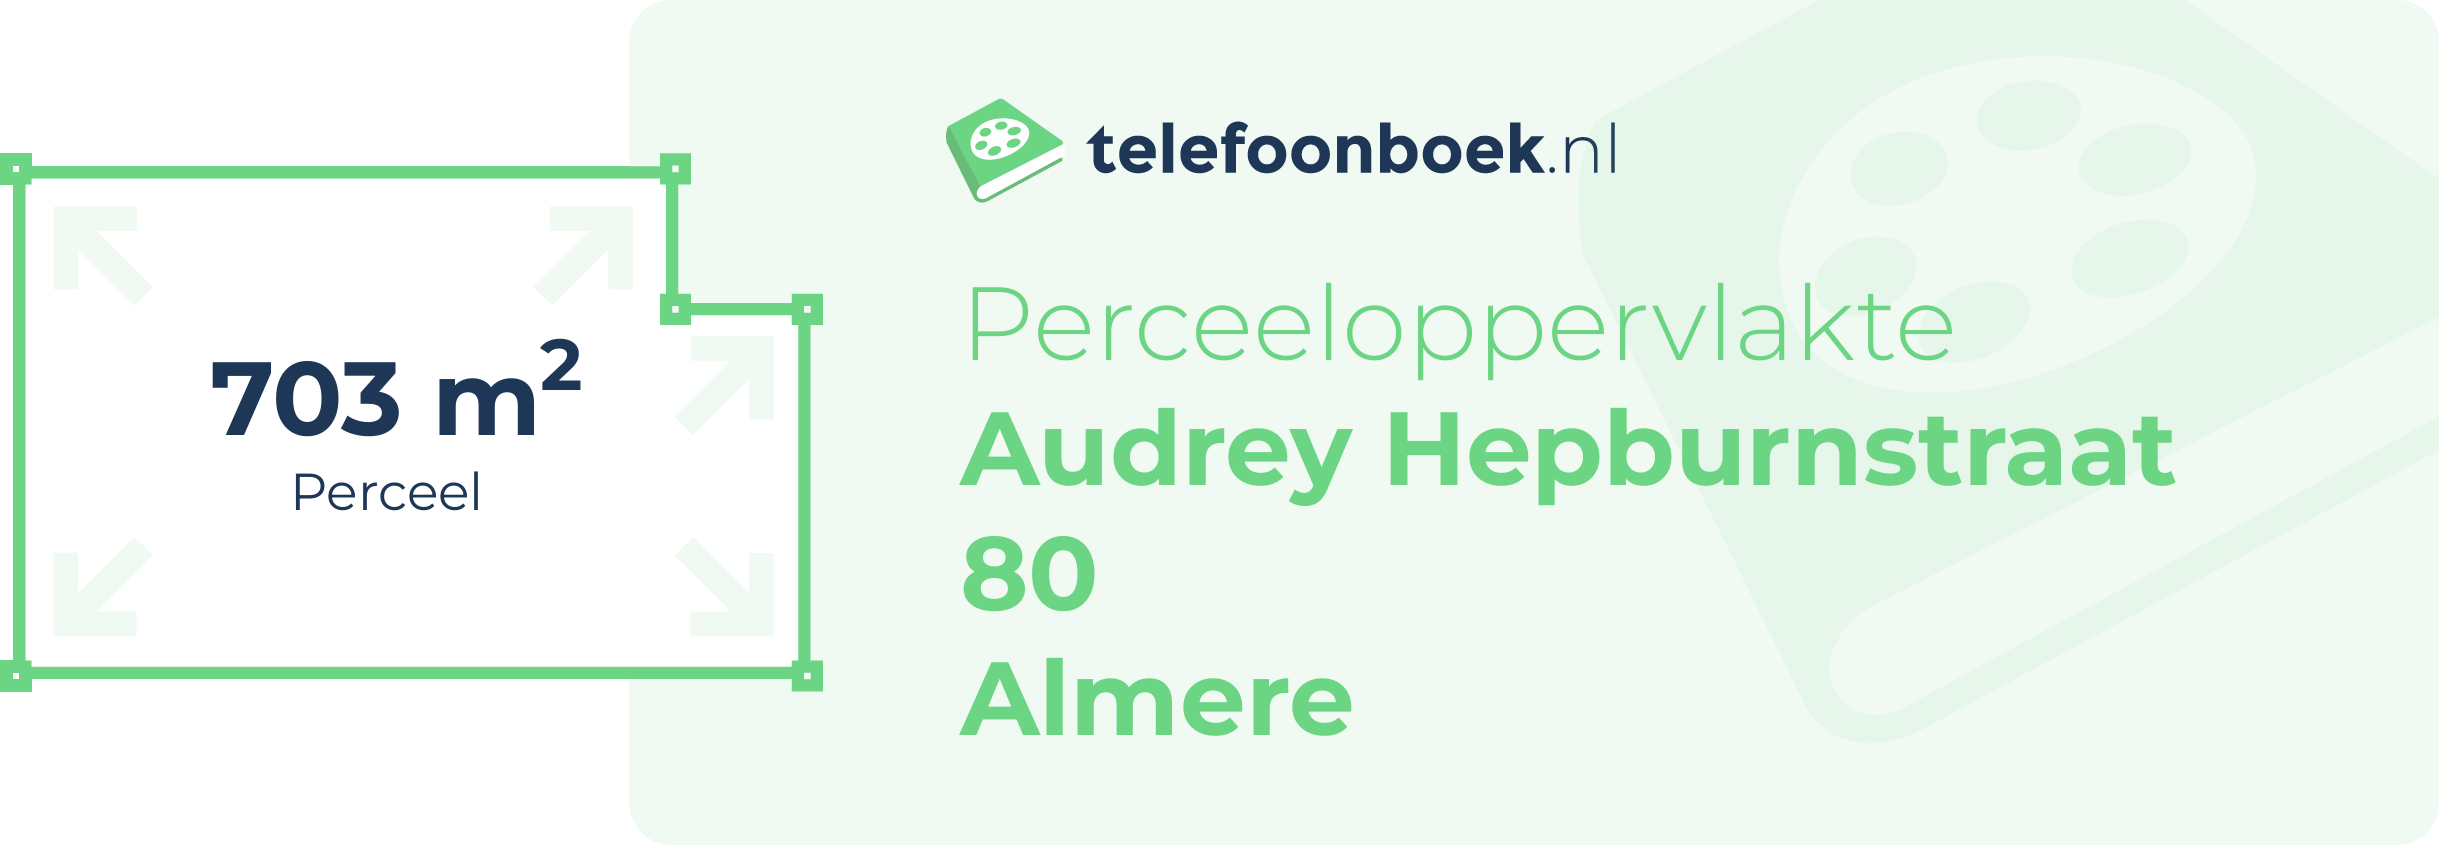 Perceeloppervlakte Audrey Hepburnstraat 80 Almere